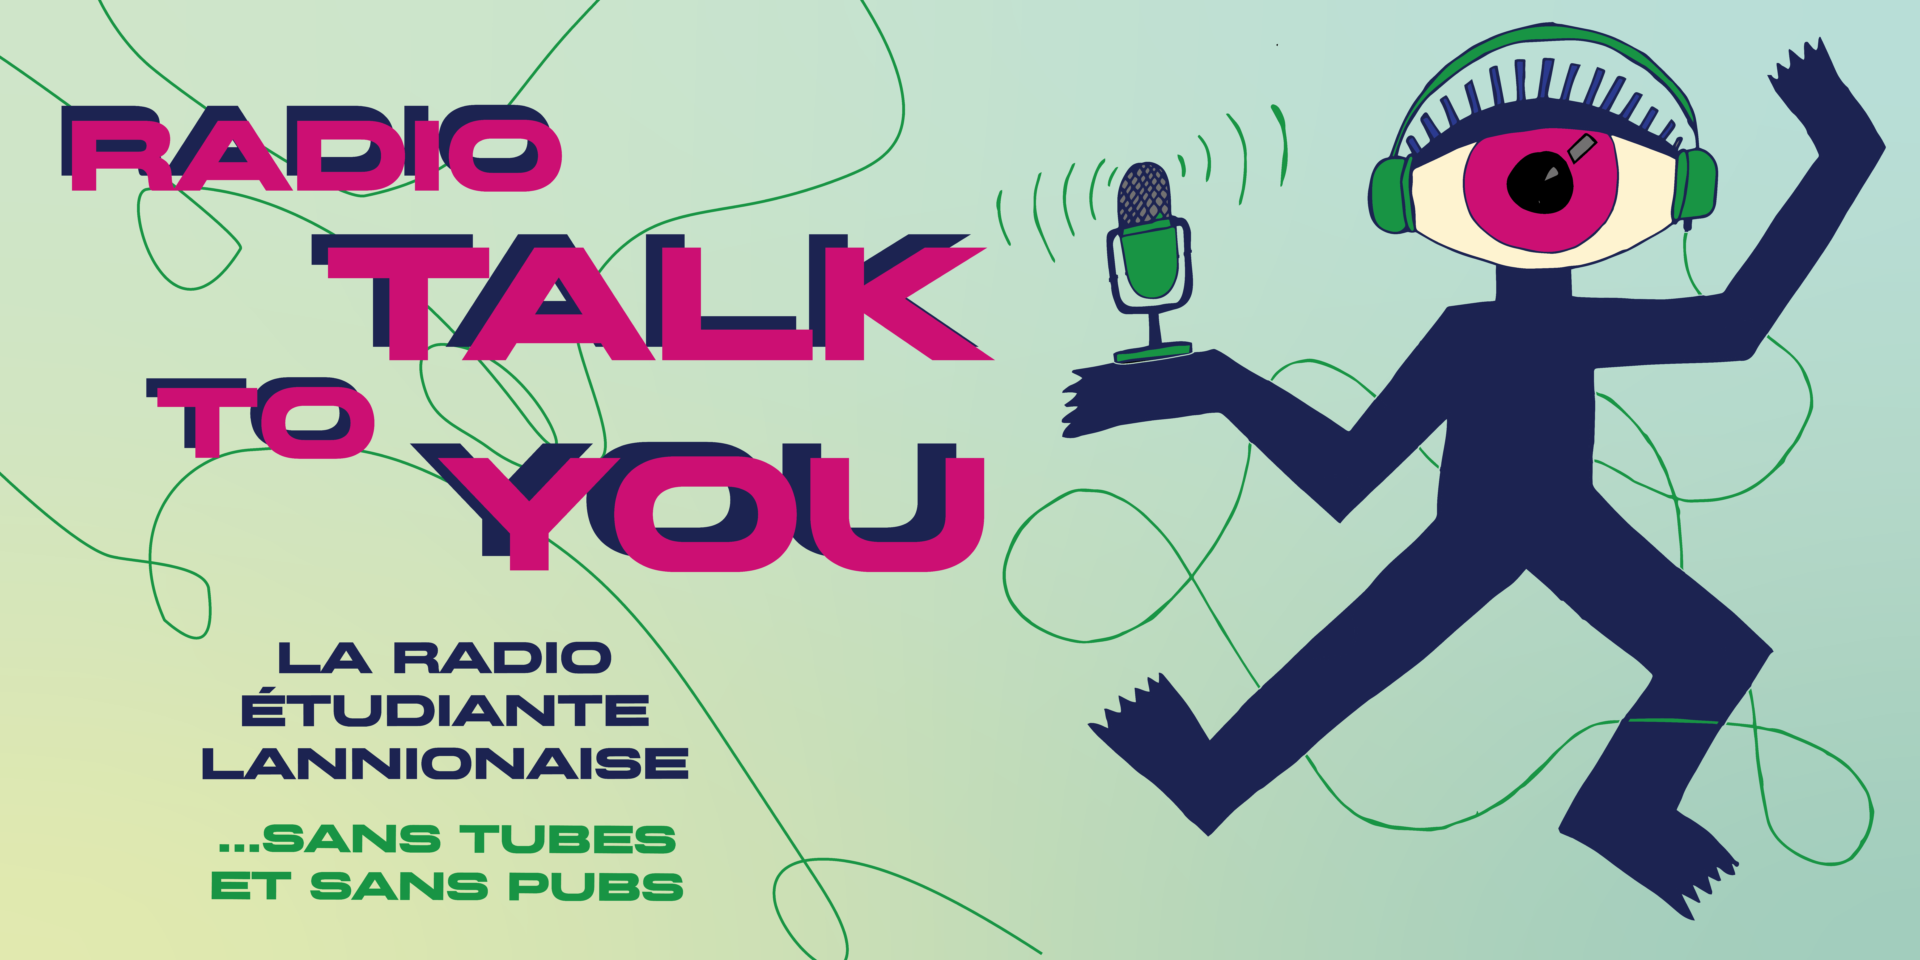 Bannière Radio Talk to you, la radio étudiante lannionaise sans pubs et sans tubes.